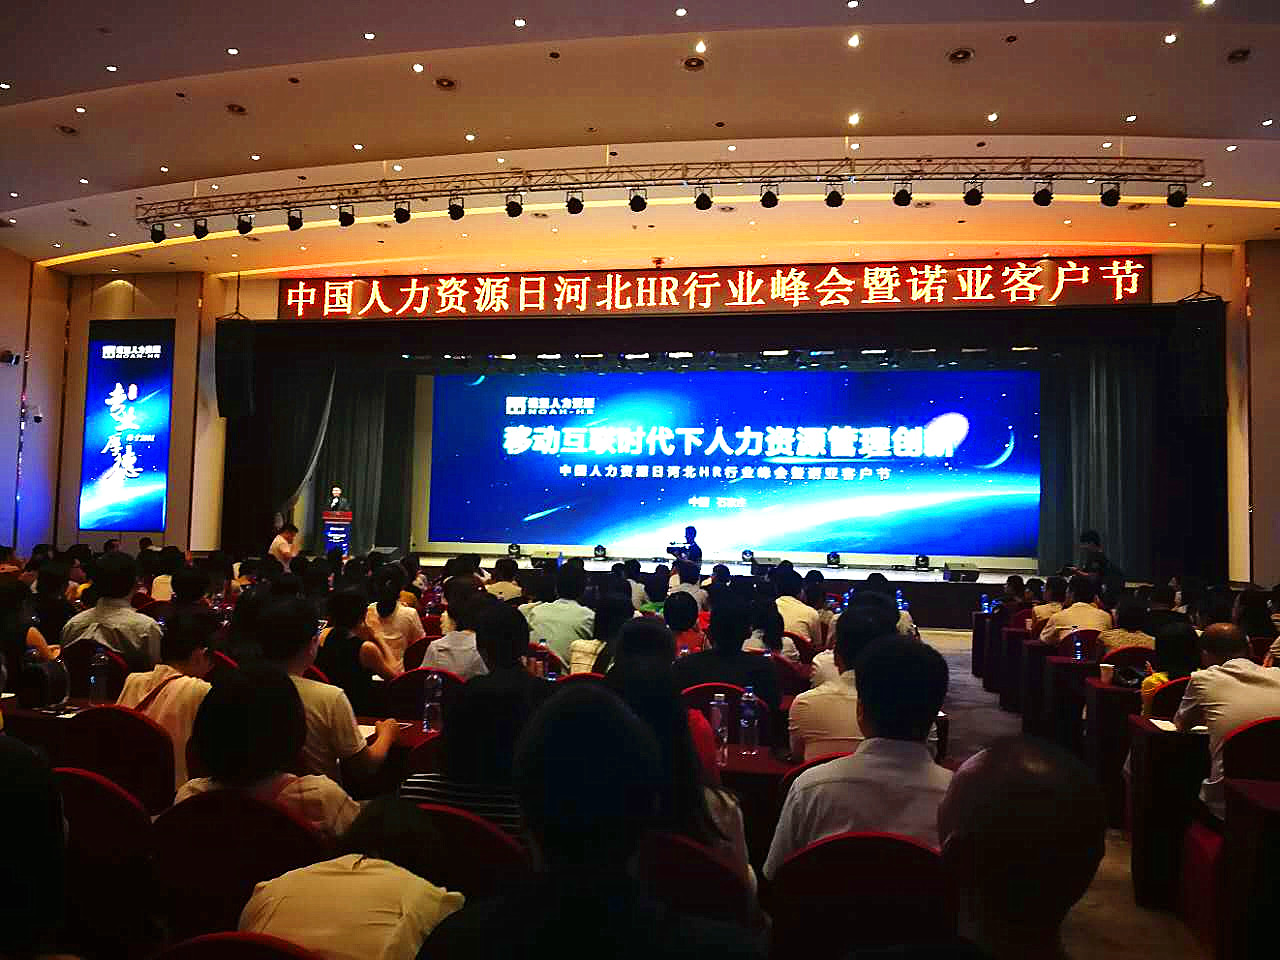 中国人力资源日河北HR行业峰会成功举办|诺亚